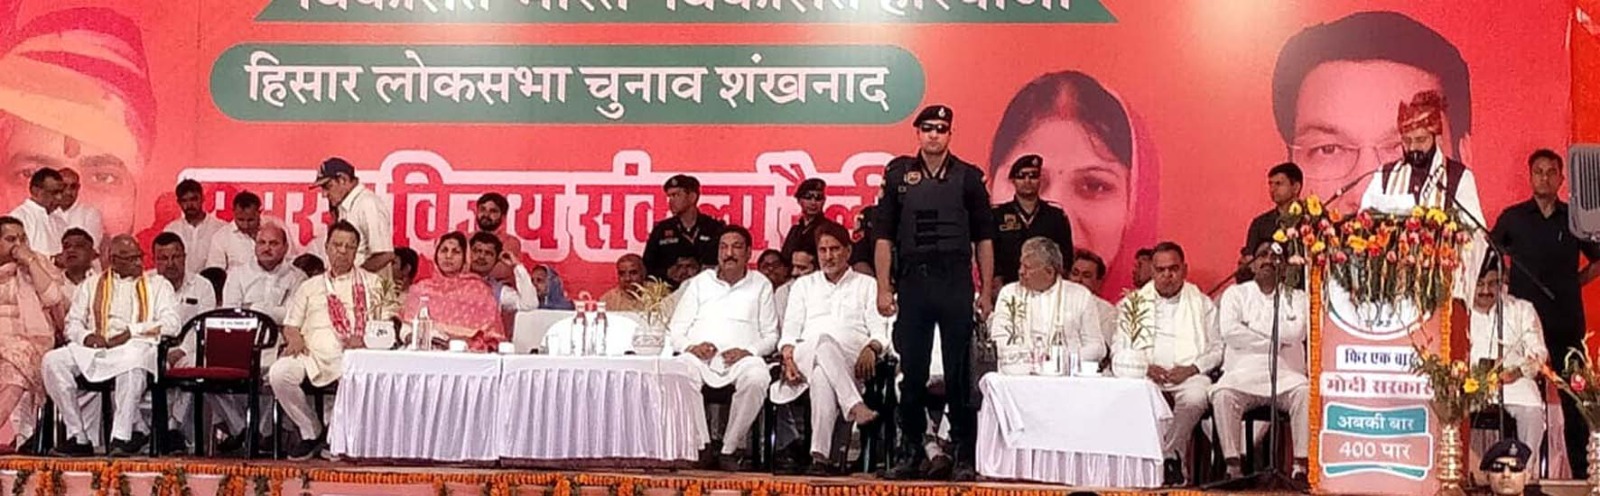 भाजपा सरकार ने देश की दशा व दिशा बदली, जनता में न्याय की उम्मीद बंधी : नायब सैनी